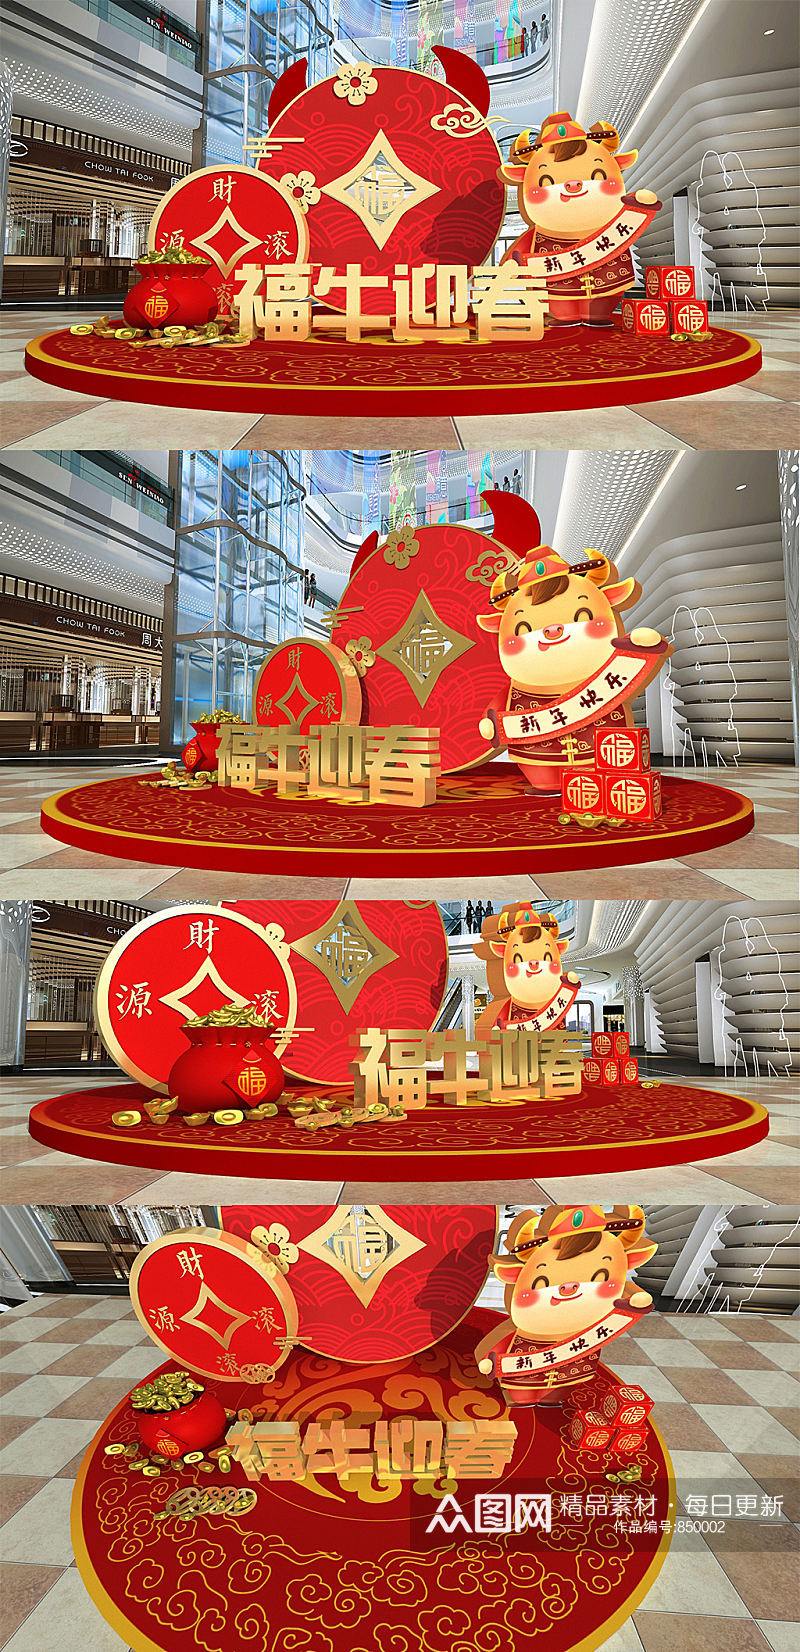 2021牛年创意喜庆食堂新年大厅春节美陈布置 礼品区地堆美陈素材